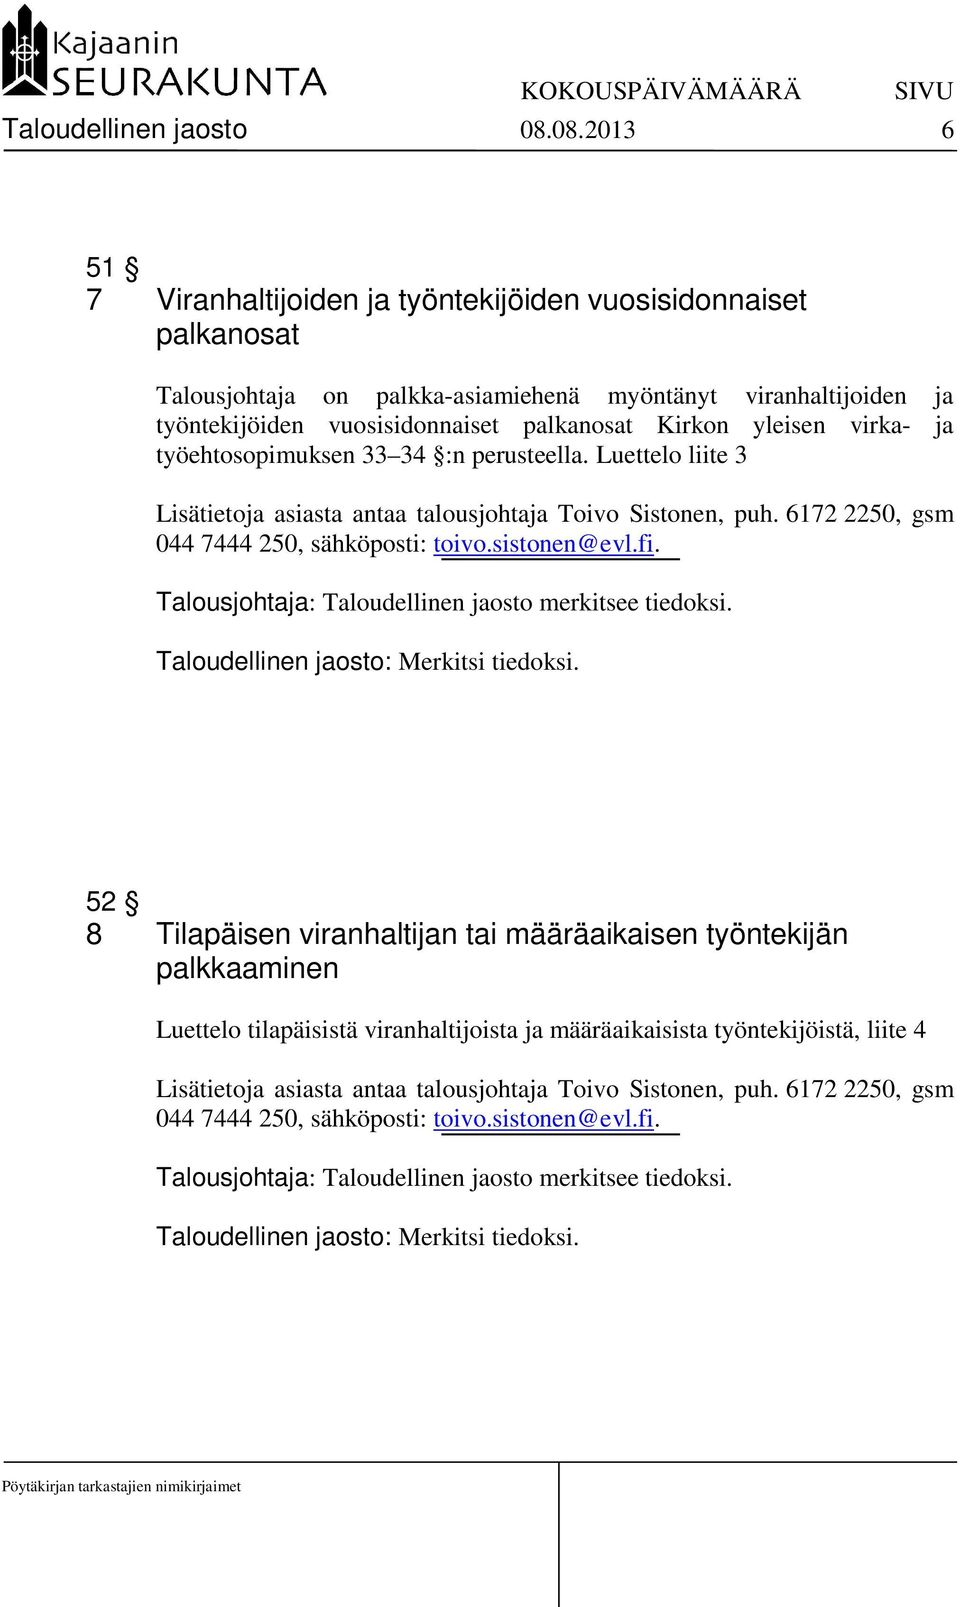 yleisen virka- ja työehtosopimuksen 33 34 :n perusteella. Luettelo liite 3 Lisätietoja asiasta antaa talousjohtaja Toivo Sistonen, puh. 6172 2250, gsm 044 7444 250, sähköposti: toivo.sistonen@evl.fi.